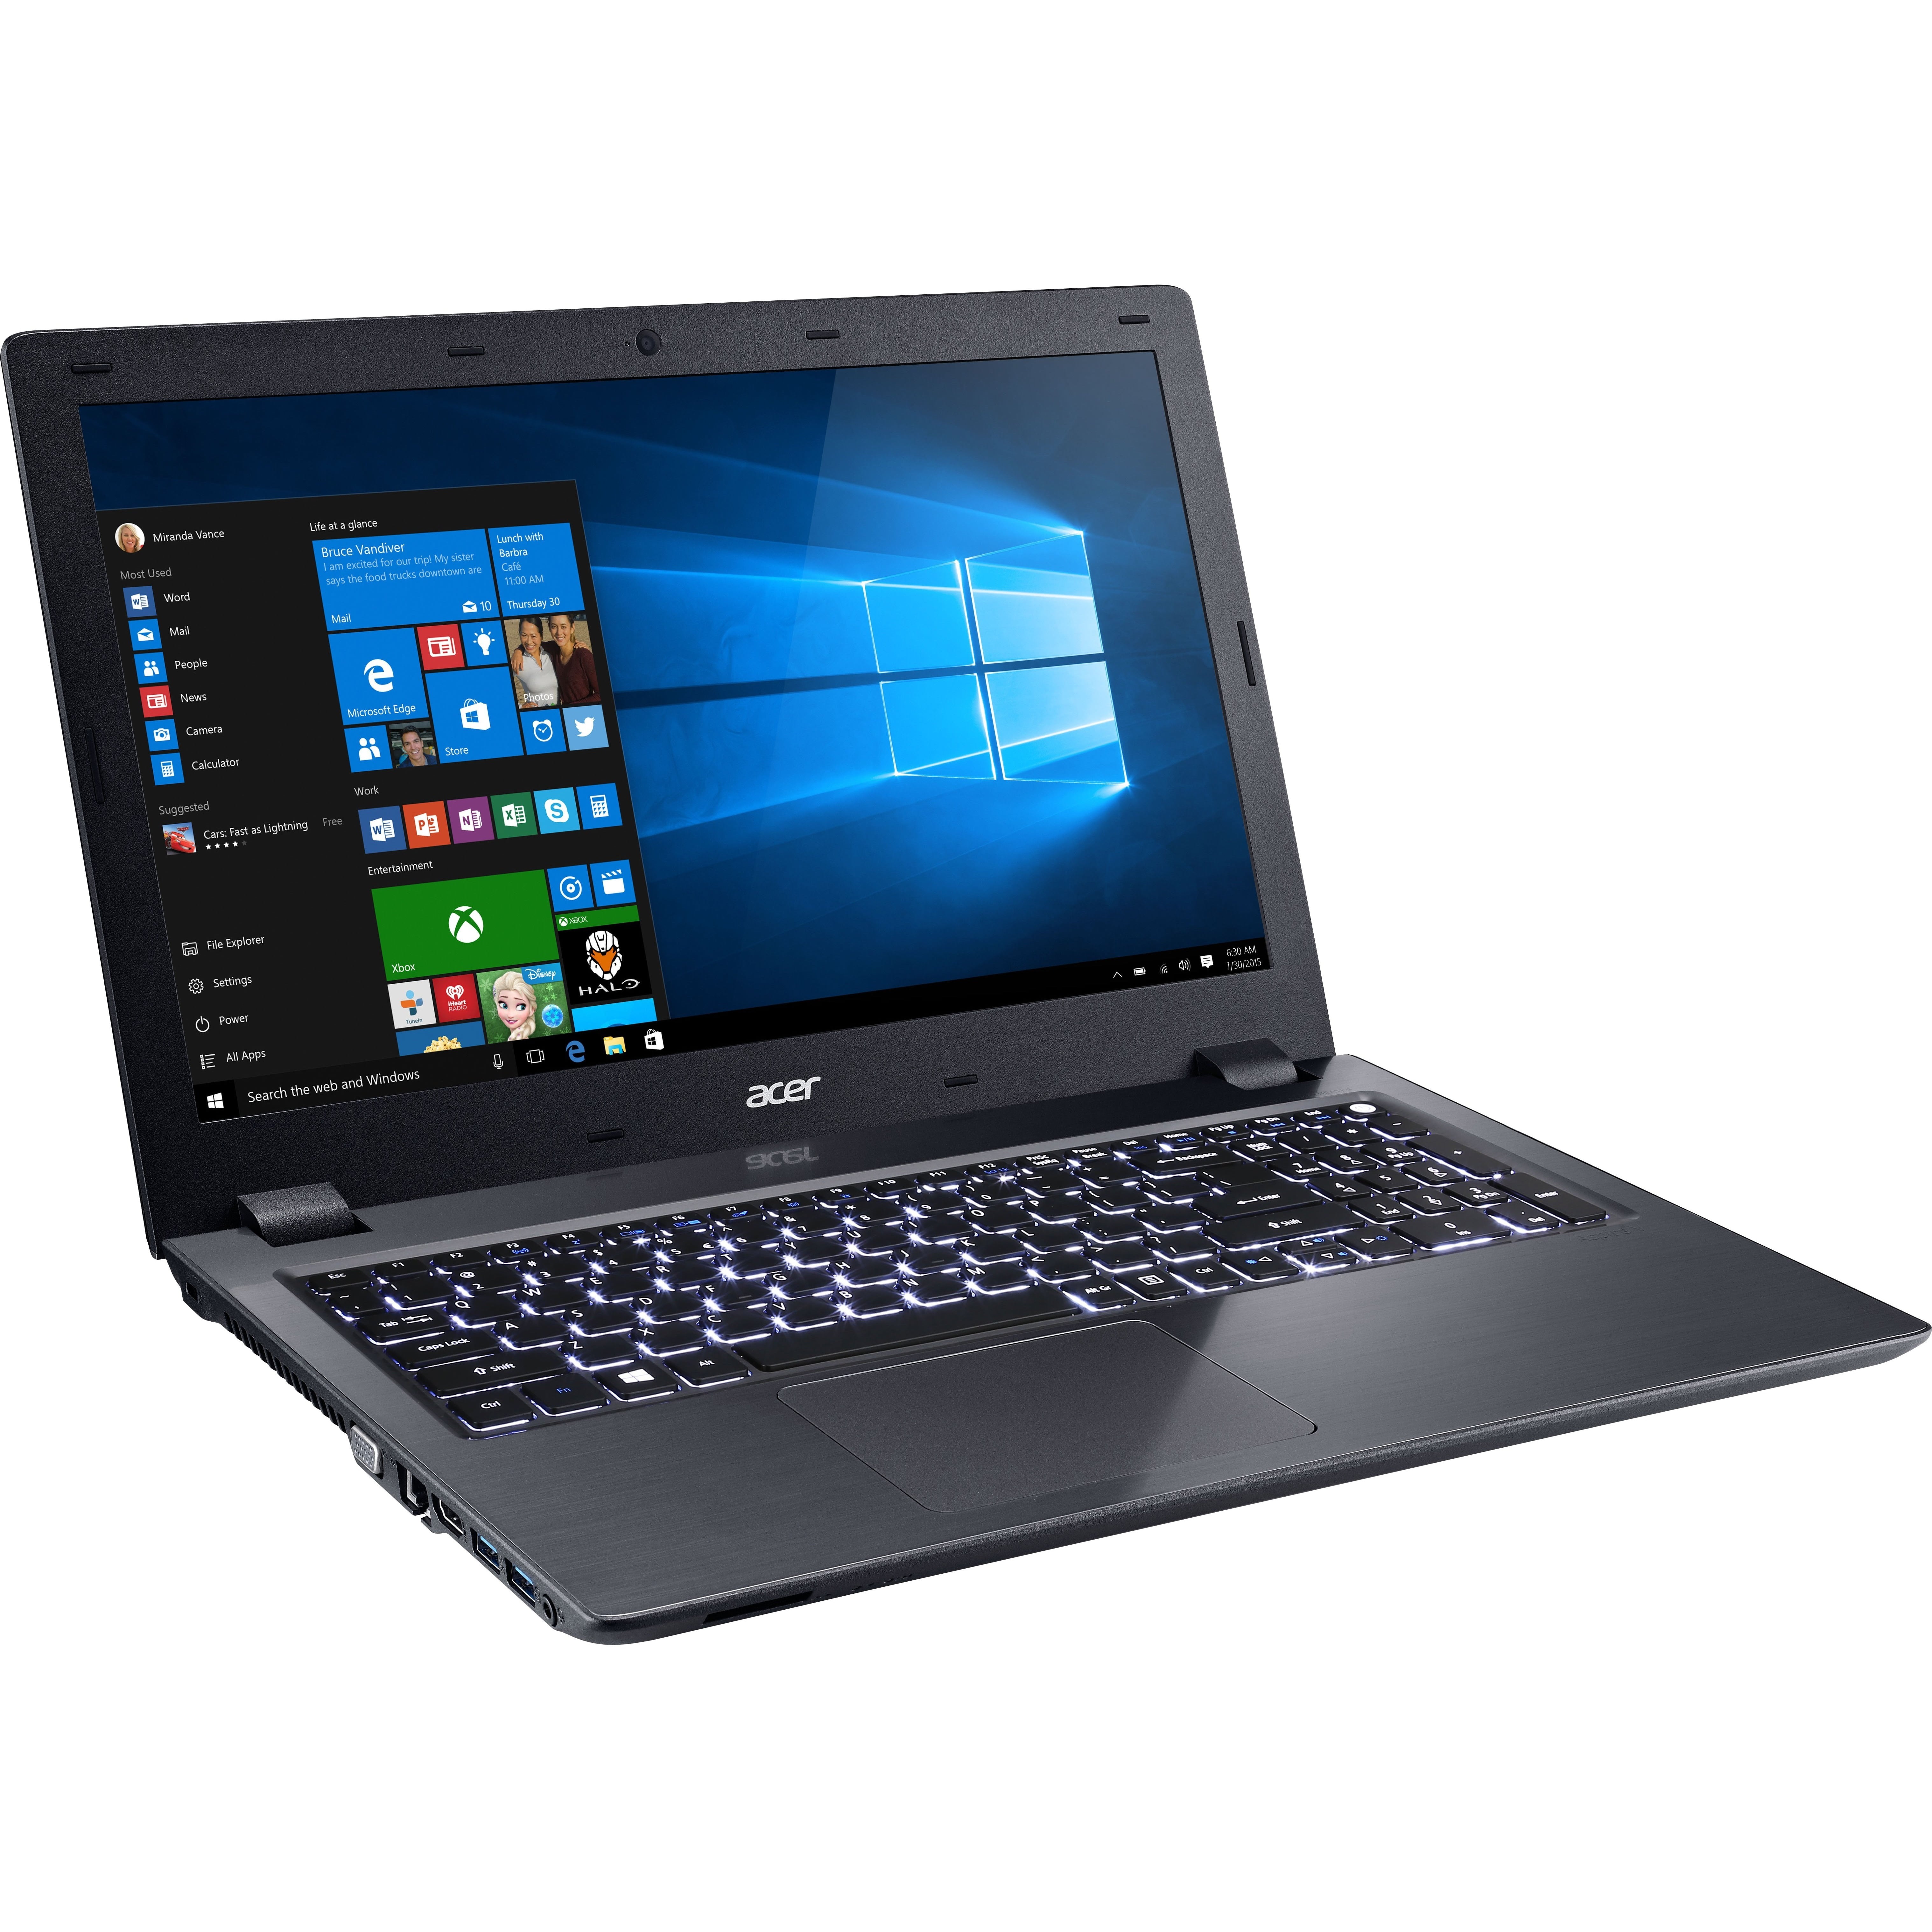 Acer Aspire 156 Full Hd Laptop Intel Core I5 I5 6300hq 8gb Ram